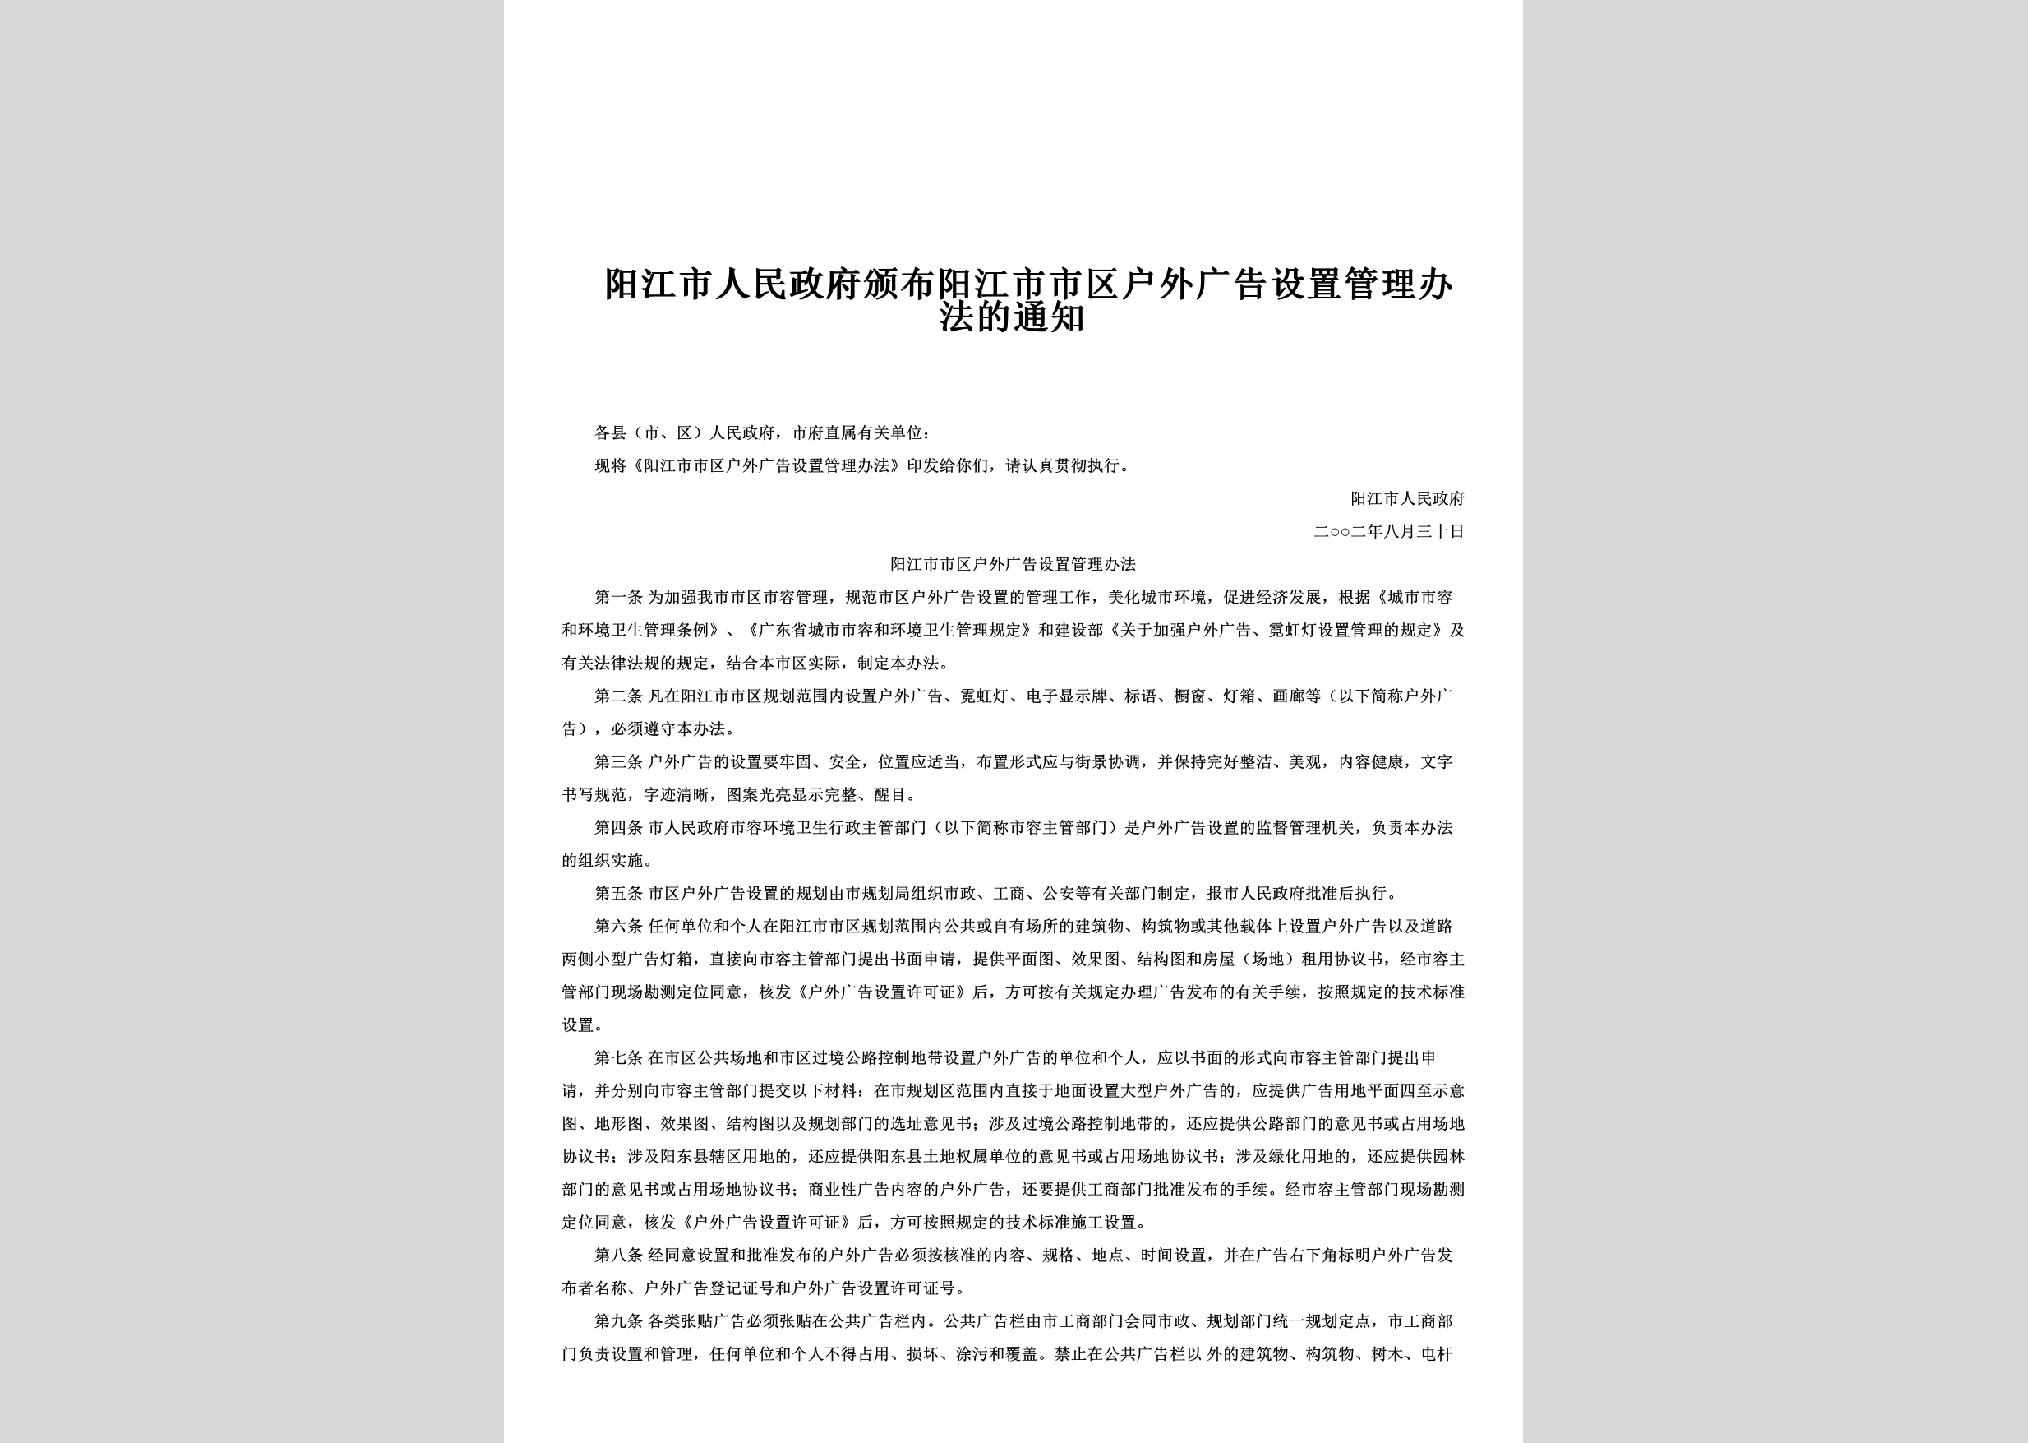 GD-HWGGGLTZ-2002：颁布阳江市市区户外广告设置管理办法的通知